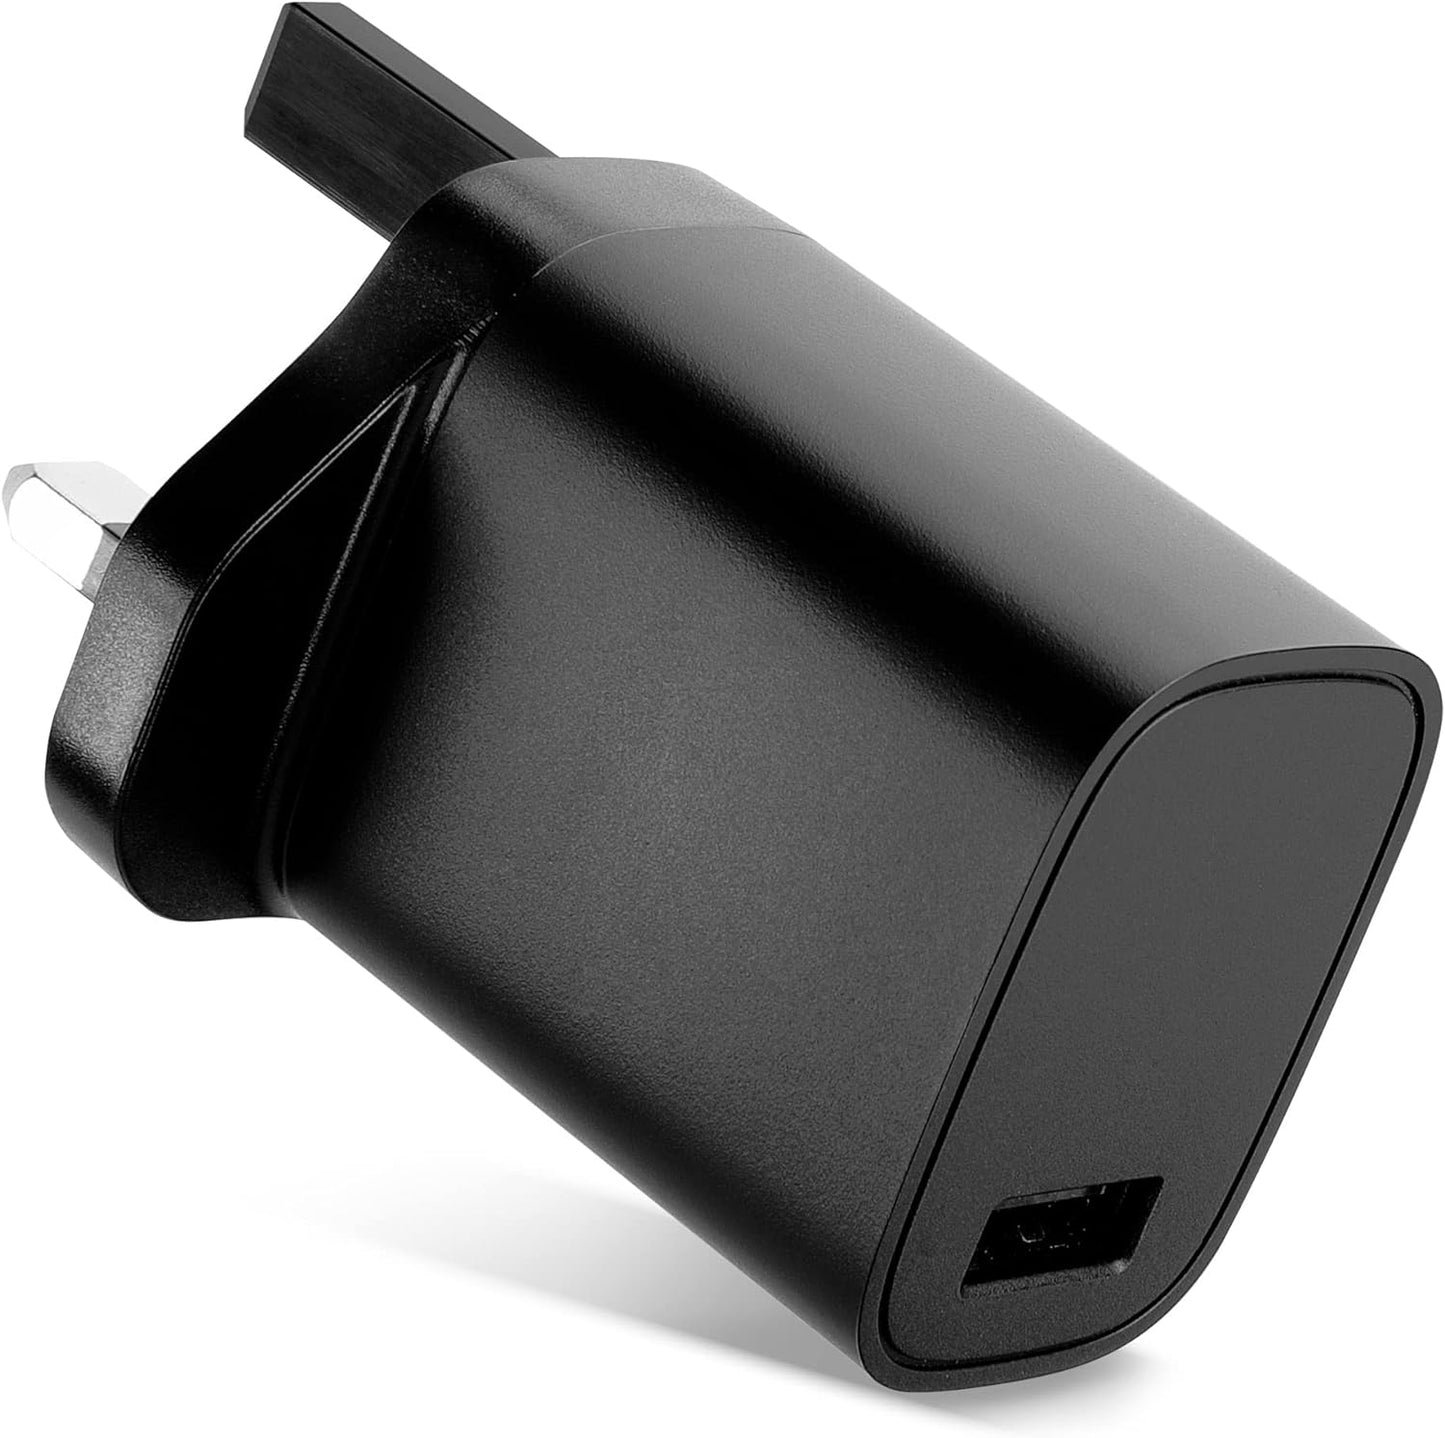 Port USB Charger UK-Plug 5V 3A 15W Charging Mains Wall USB Adapter Outlet Socket 100V-240V for Phone, Tablet, Speakers